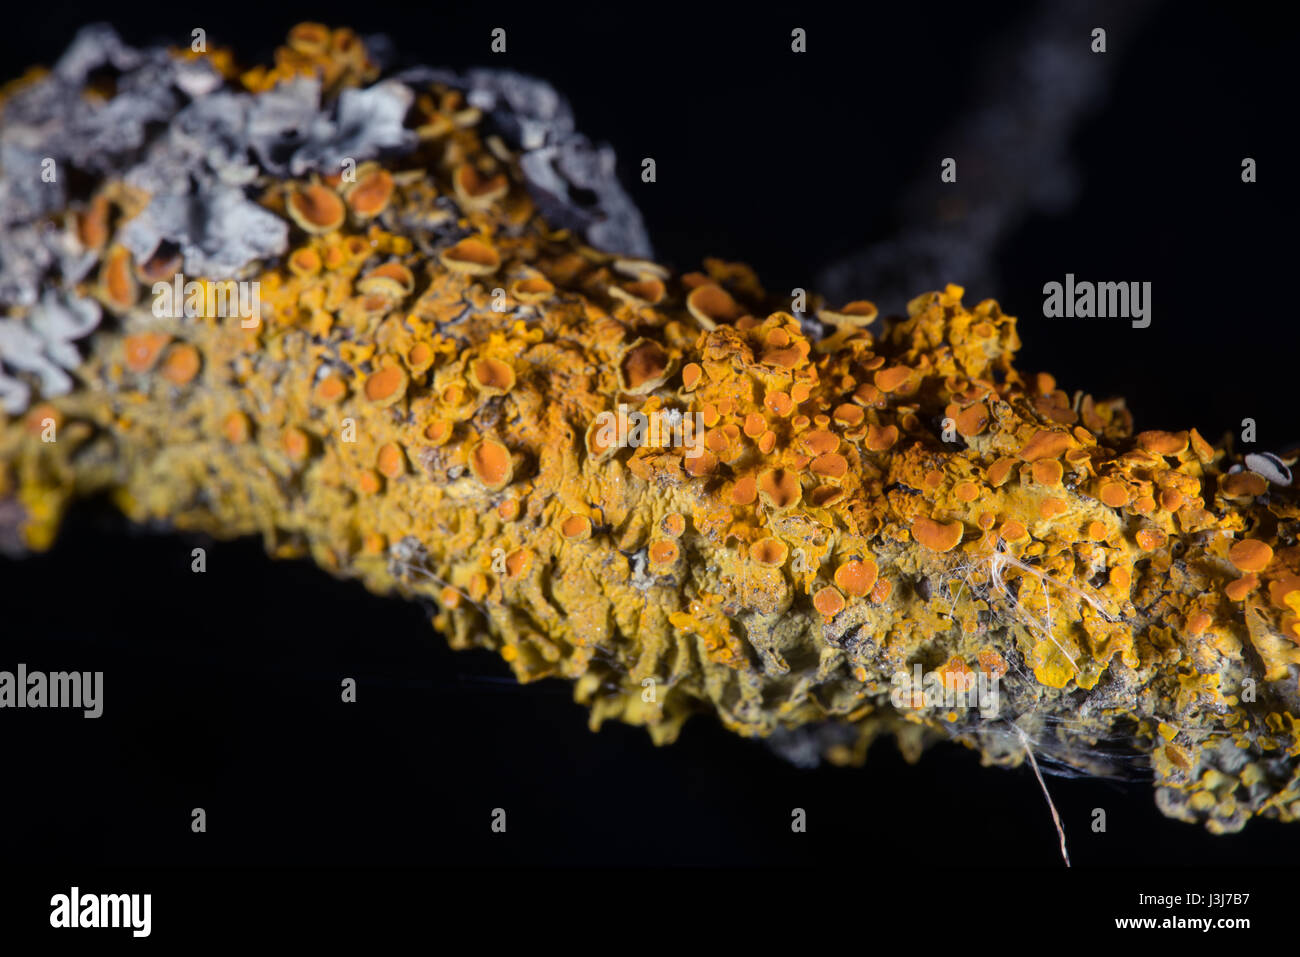 Lichen up-close Stock Photo